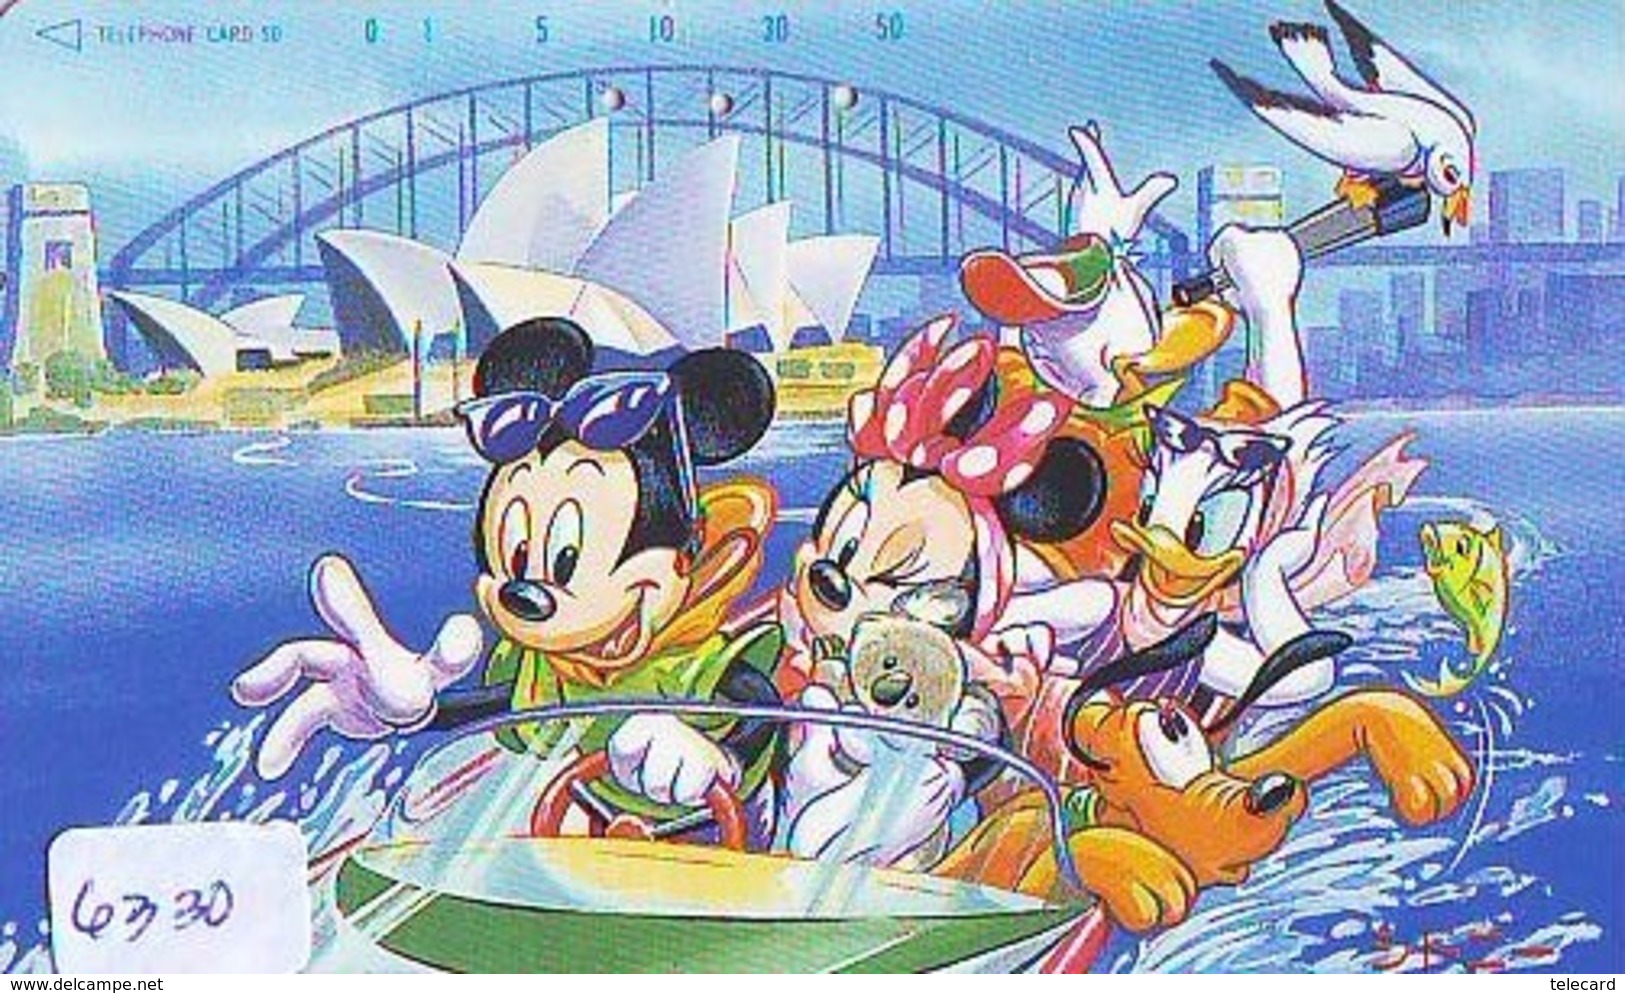 Télécarte Japon DISNEY / 110-169804 - Série Voyage 11/16 - AUSTRALIA KOALA SYDNEY OPERA (6330) Japan Phonecard - Disney